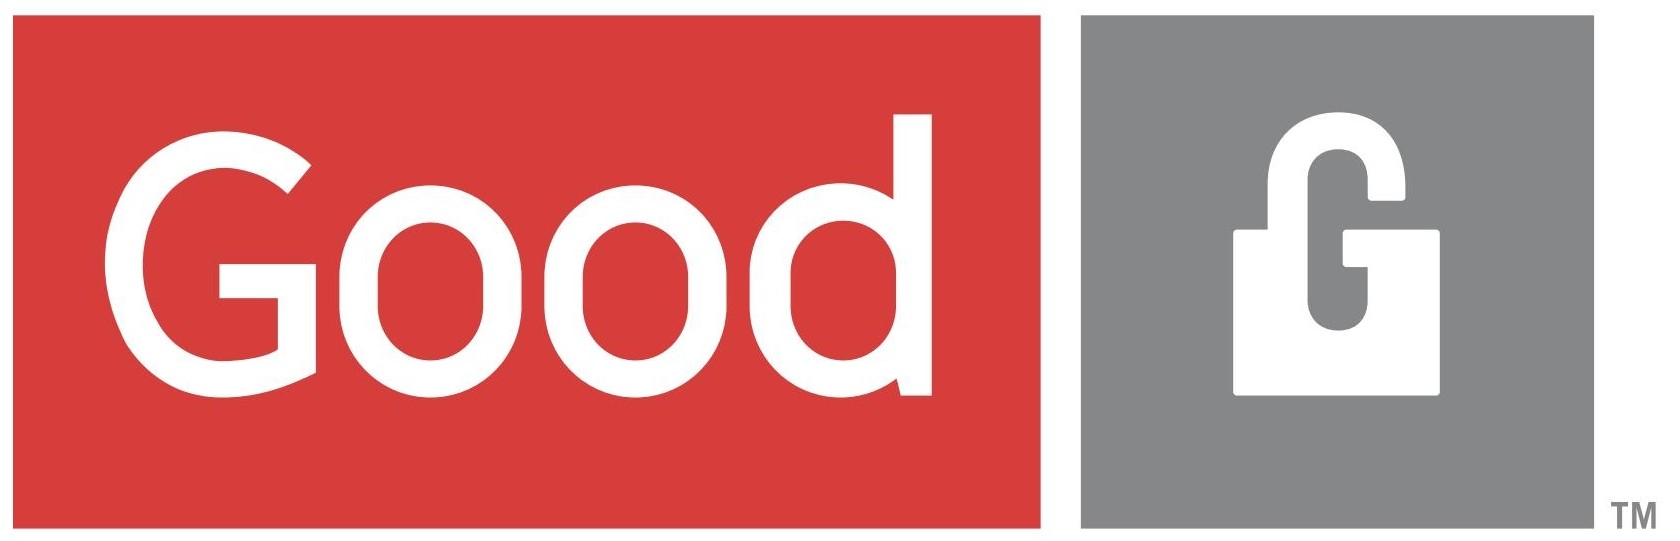 Good Logo [Technology - PDF]